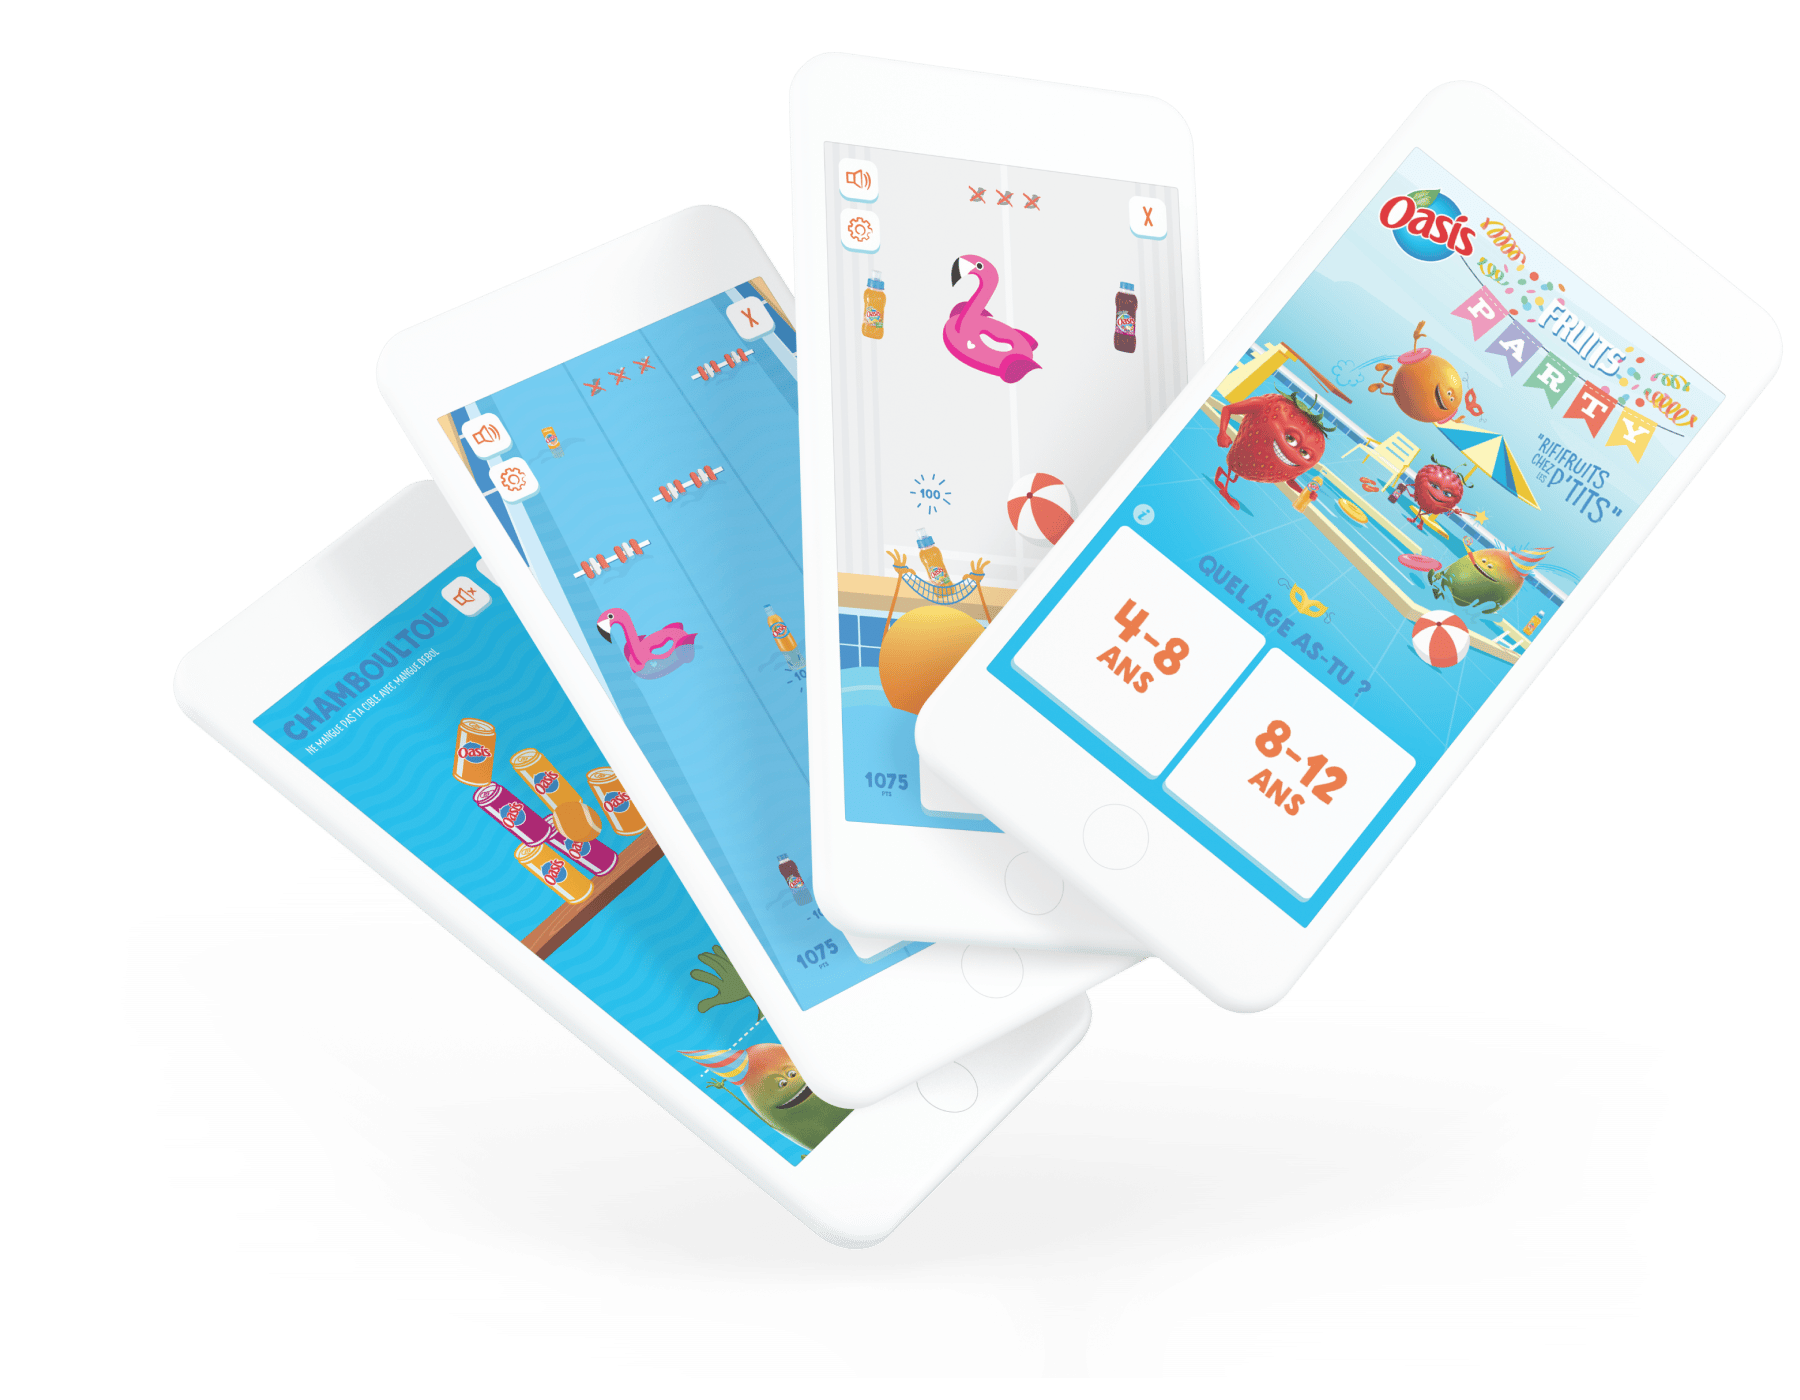 Orangina Suntory, client de l'agence digitale Data Projekt - Création de casual game, adver game, social game, jeux concours et application mobile